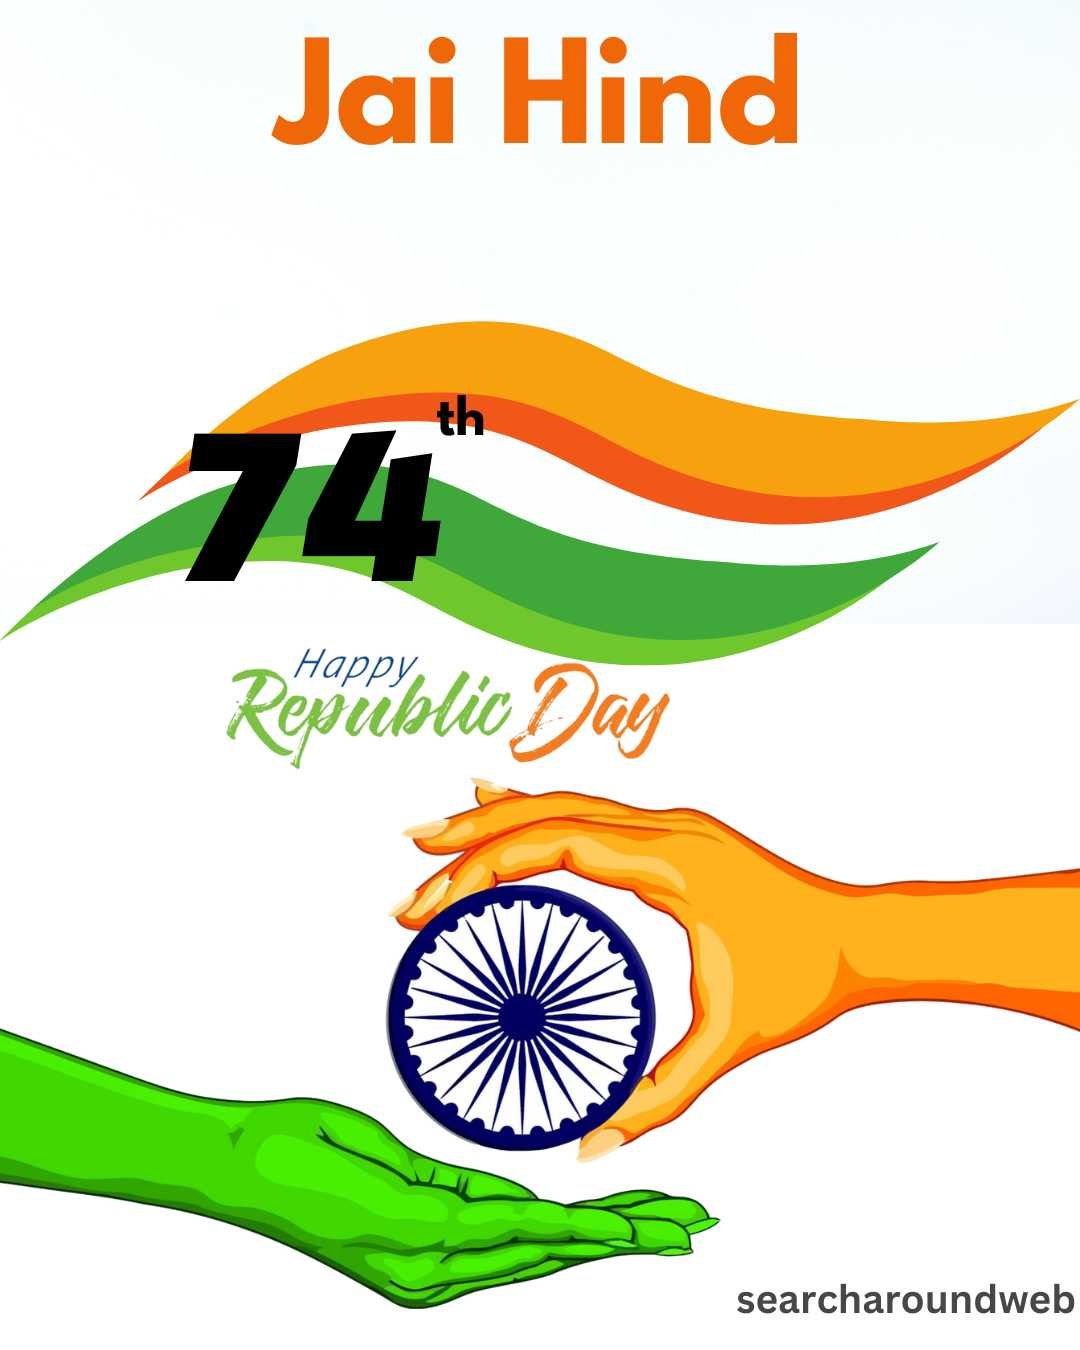 இனிய குடியரசு தின வாழ்த்துக்கள் | Republic Day Wishes 2023 in Tamil